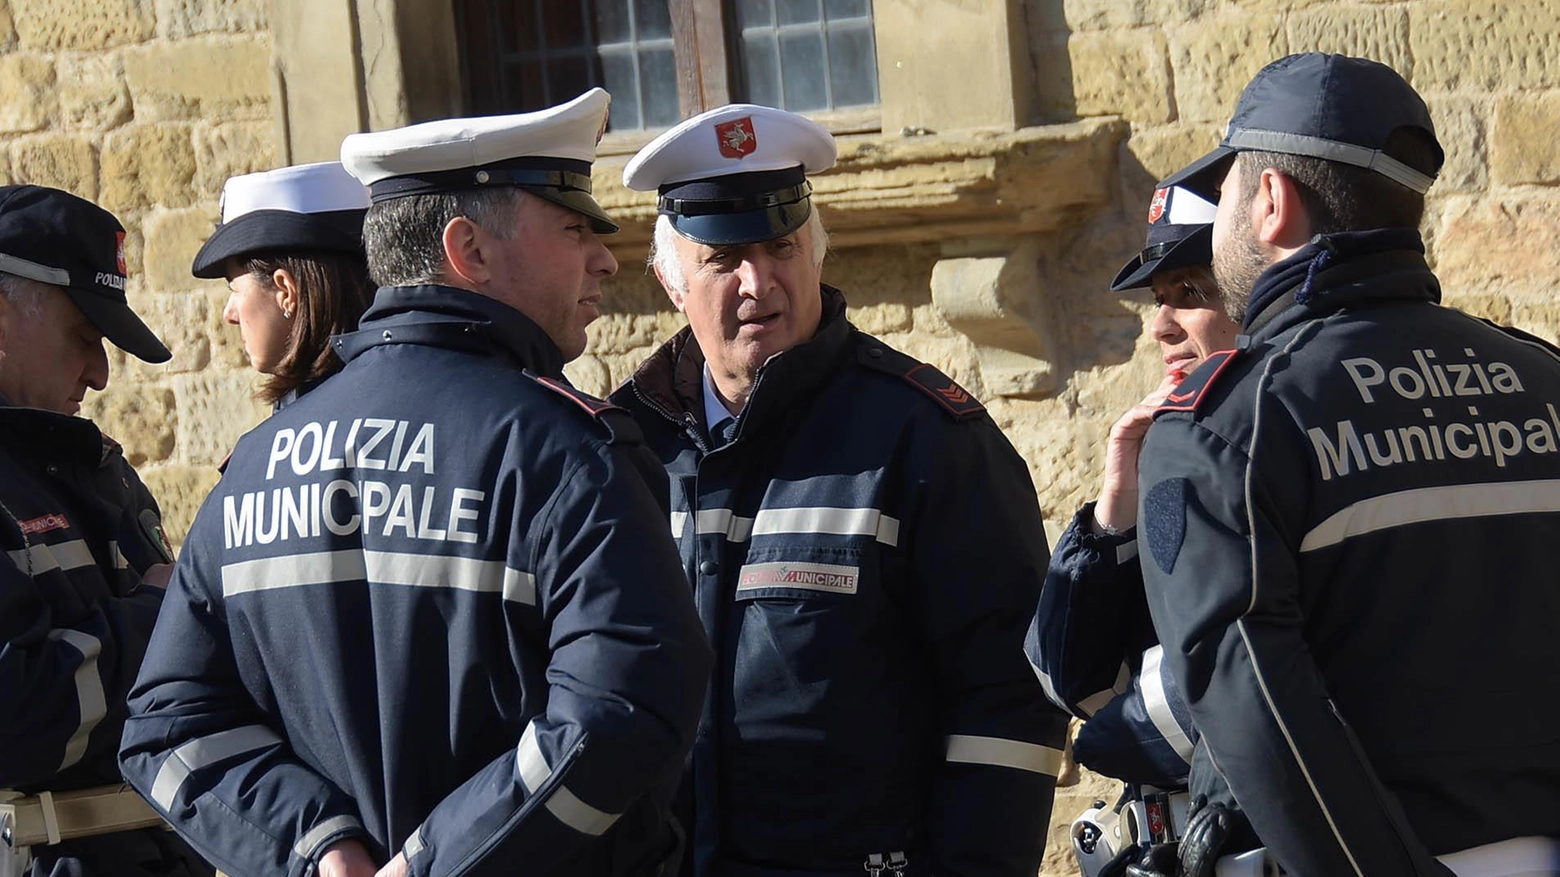 Scadenza domande entro l'8 maggio per 9 posti nella polizia municipale di Arezzo. Requisiti e modalità di candidatura online specificati. Tre prove previste per i candidati selezionati.